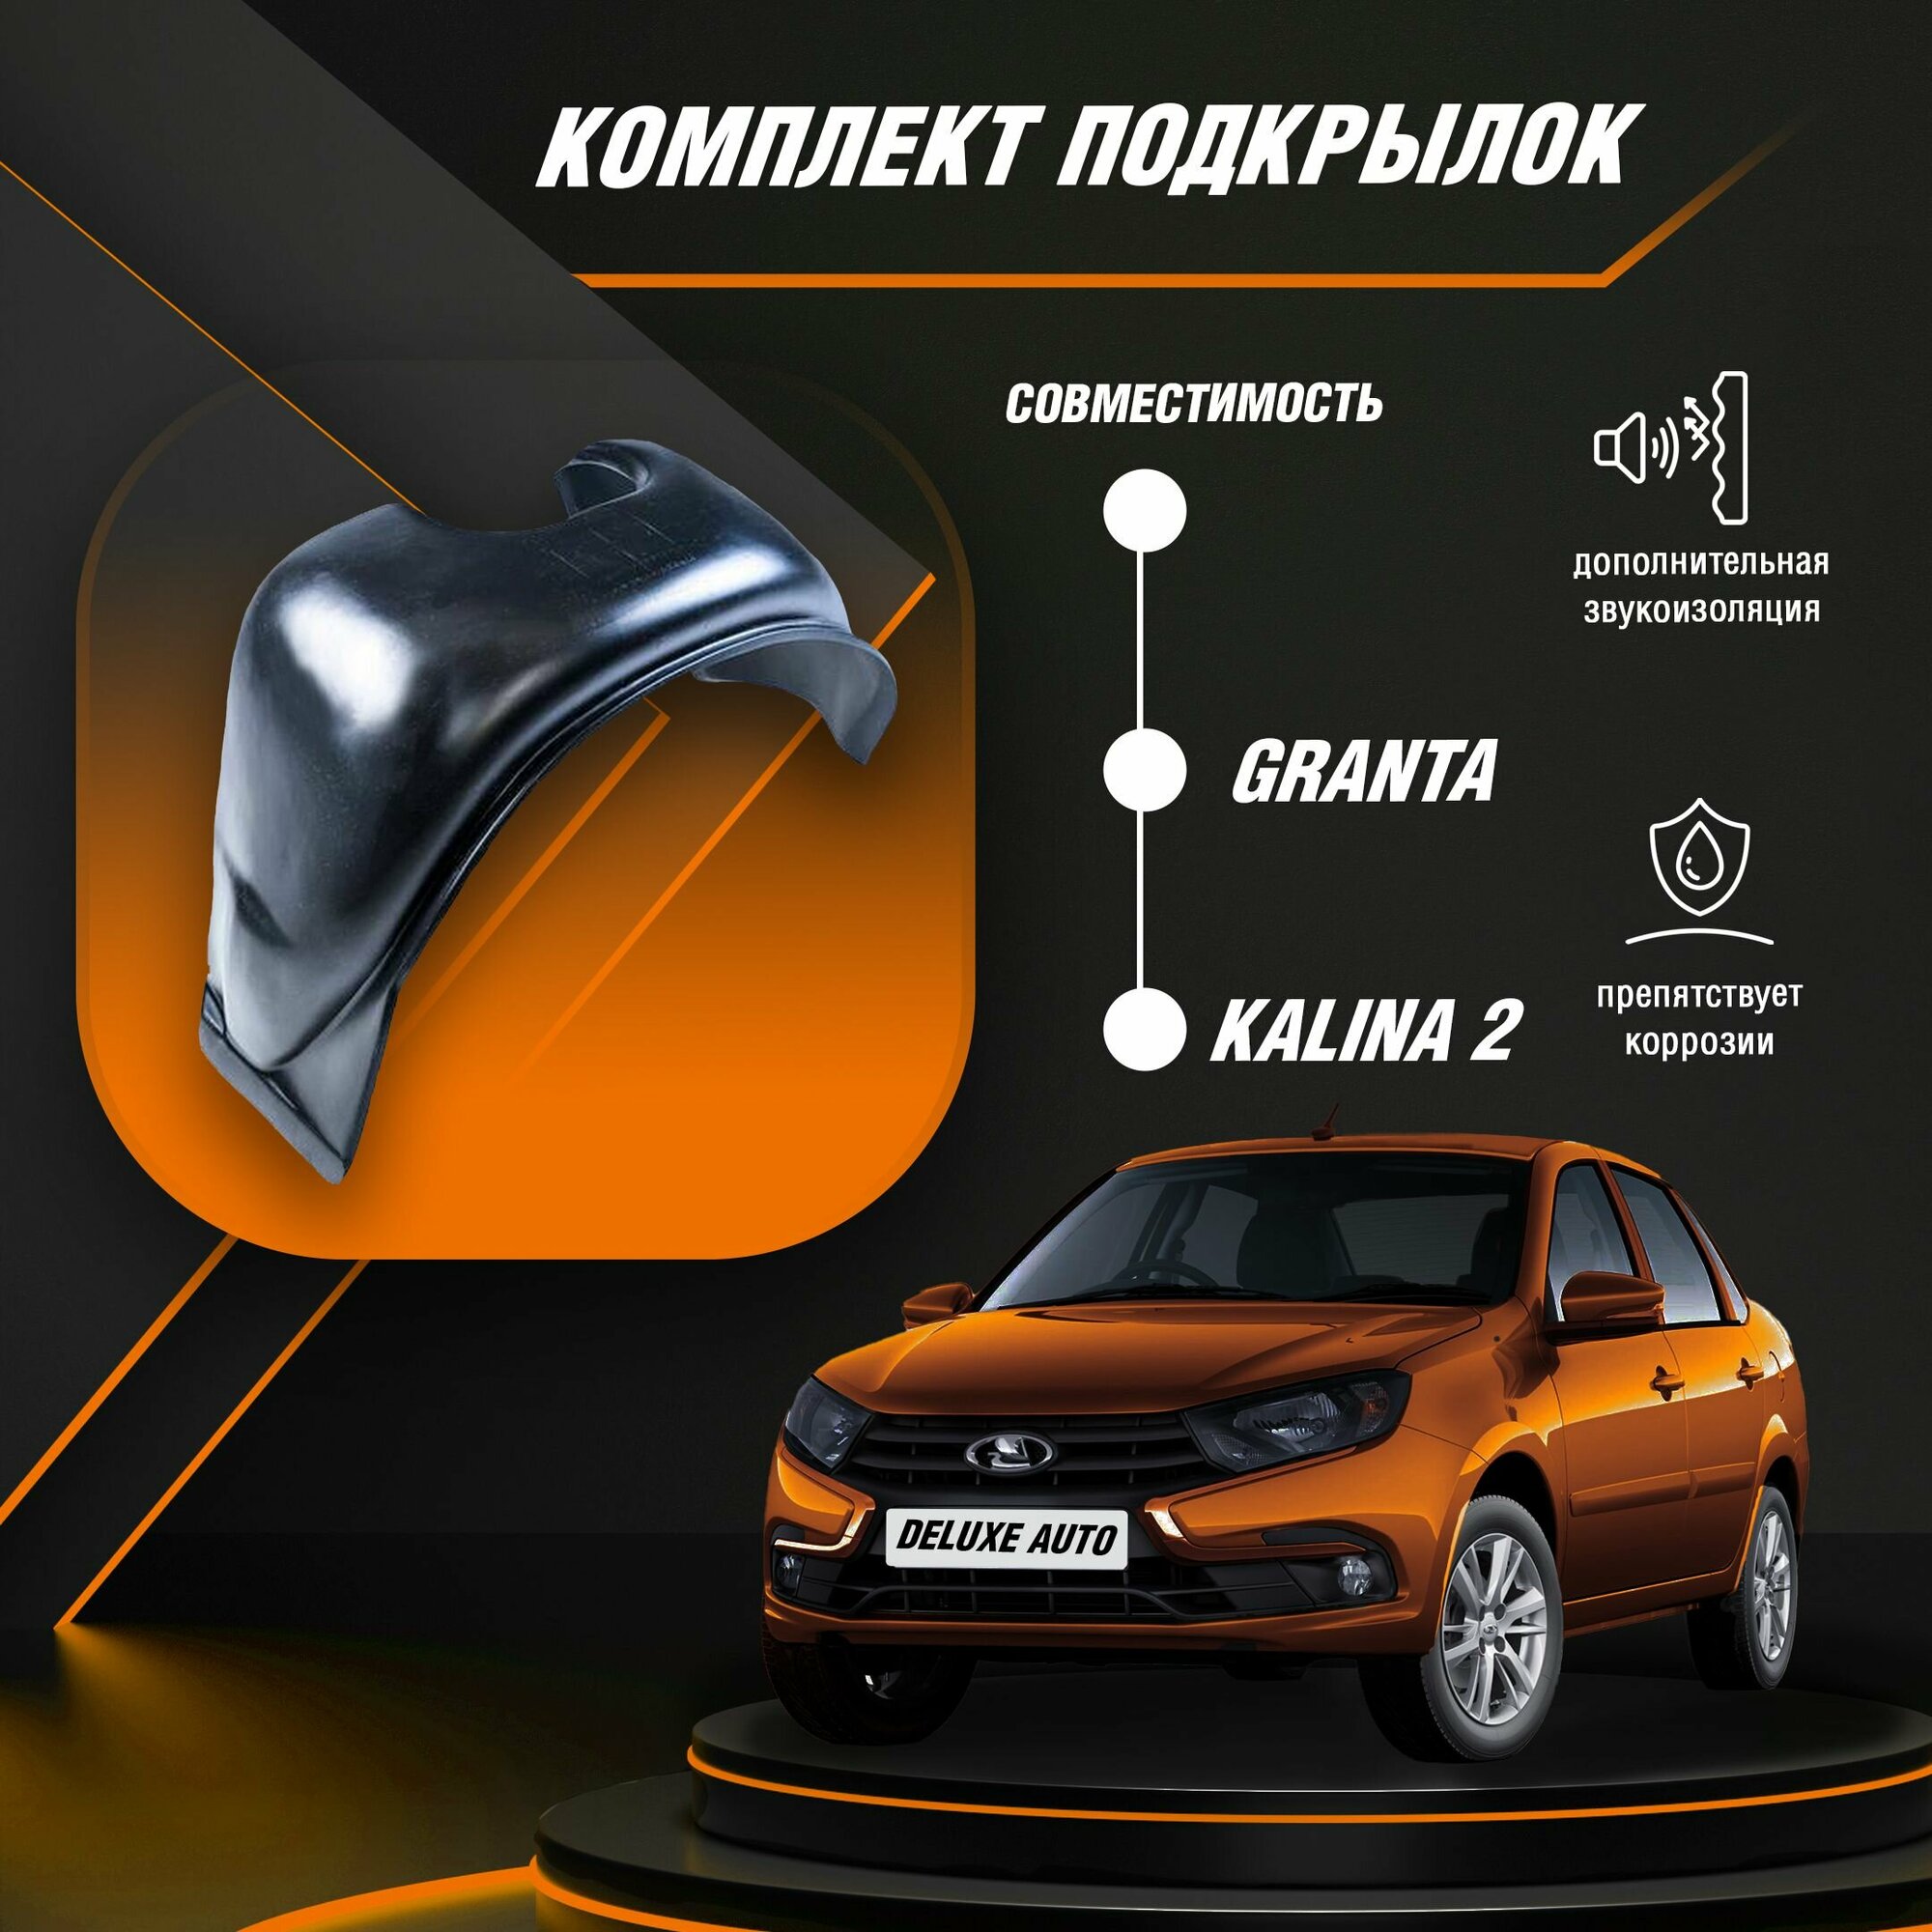 Комплект Подкрылок-Локеры для автомобиля Лада Гранта Калина-2 (Все модификации кузова)